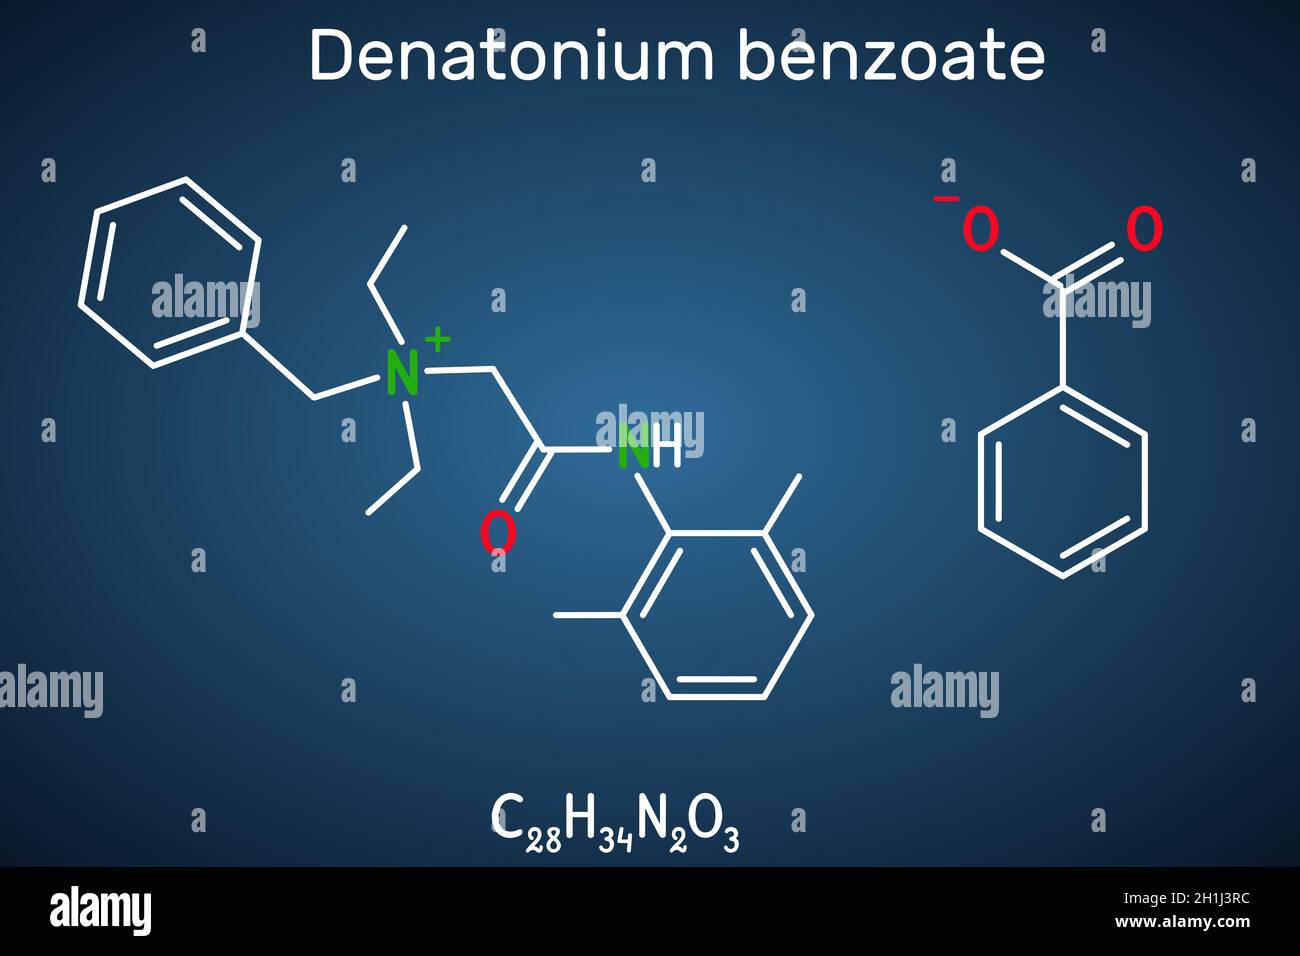 Denatonium-Benzoat-Molekül. Es hat den bittersten Geschmack aller Verbindungen, die der Wissenschaft bekannt sind. Strukturelle chemische Formel auf dem dunkelblauen Hintergrund. Stock Vektor